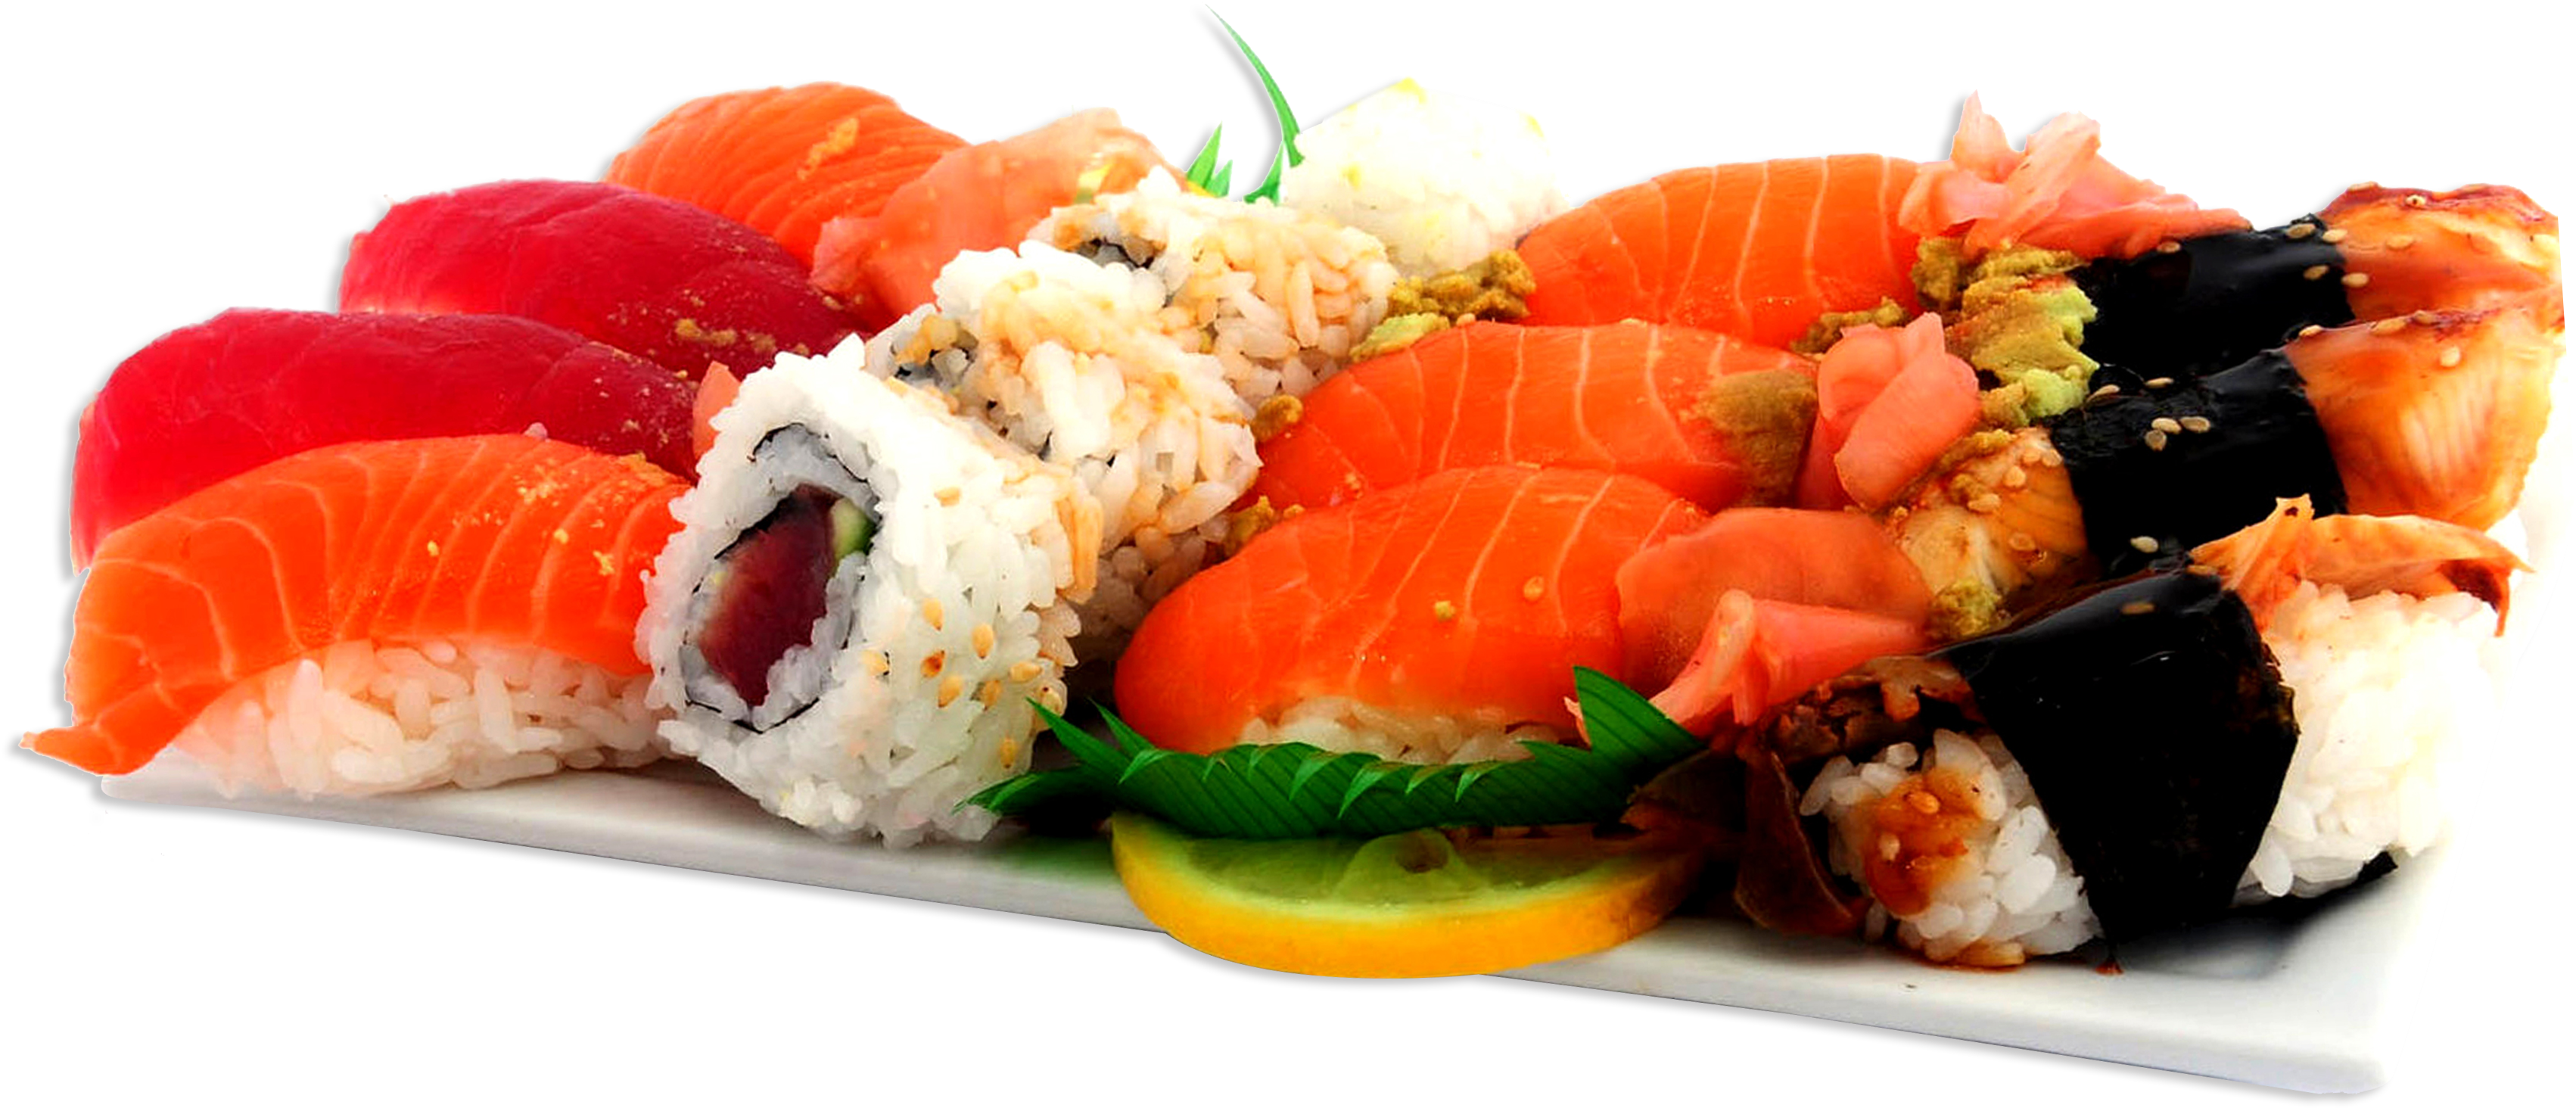 Фото суши на белом фоне